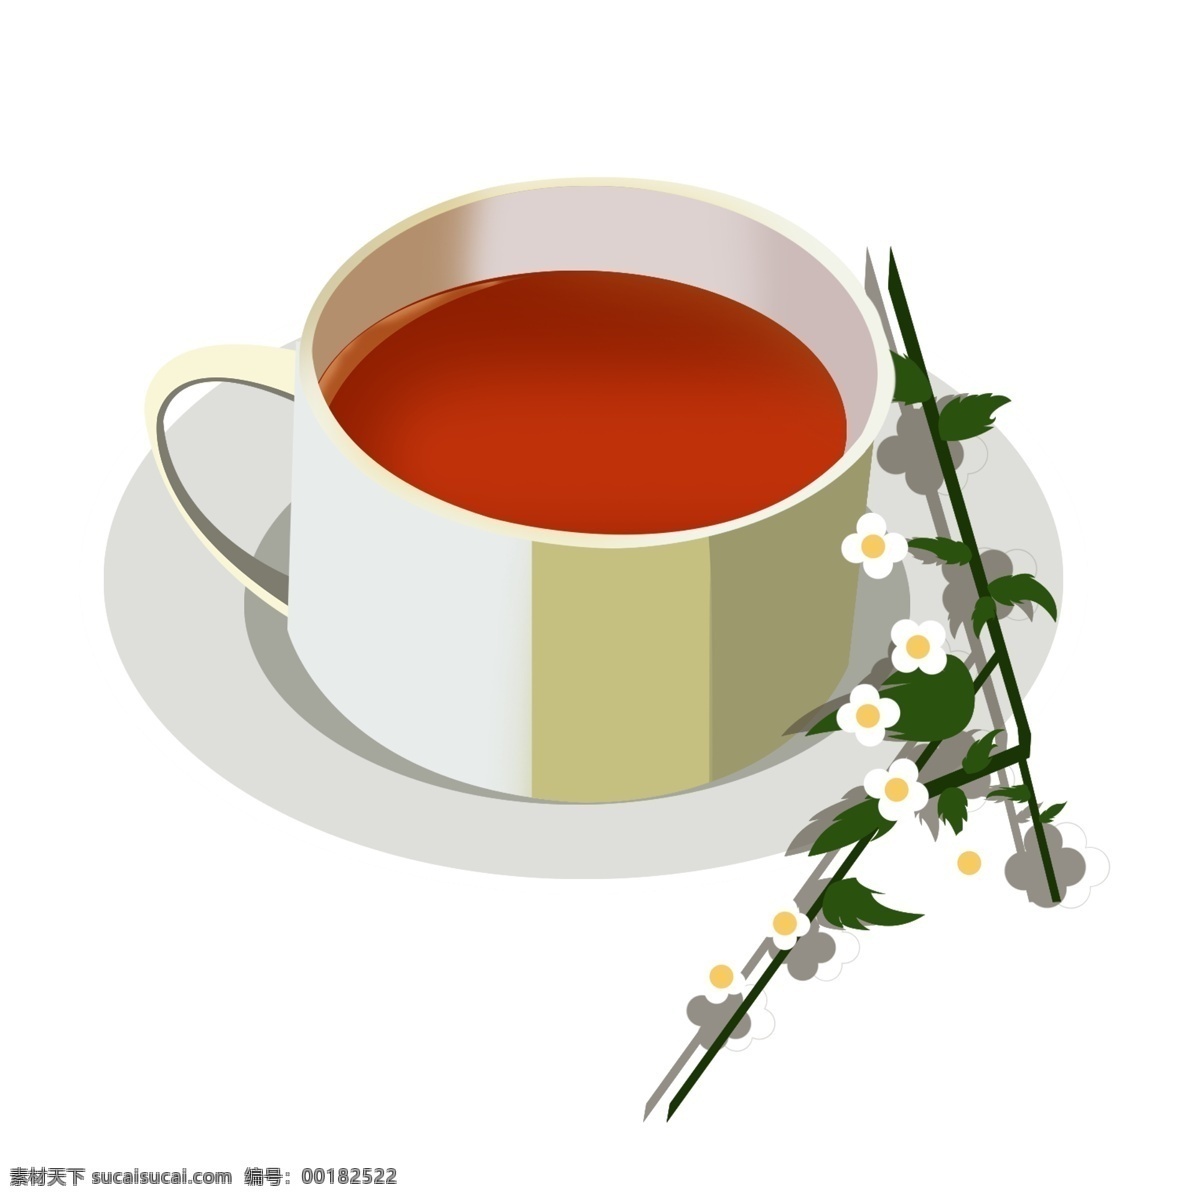 一杯 植物 花茶 插画 一杯茶 植物花茶 白色茶具 西式茶 养生茶 保健 花朵 清新 茶具